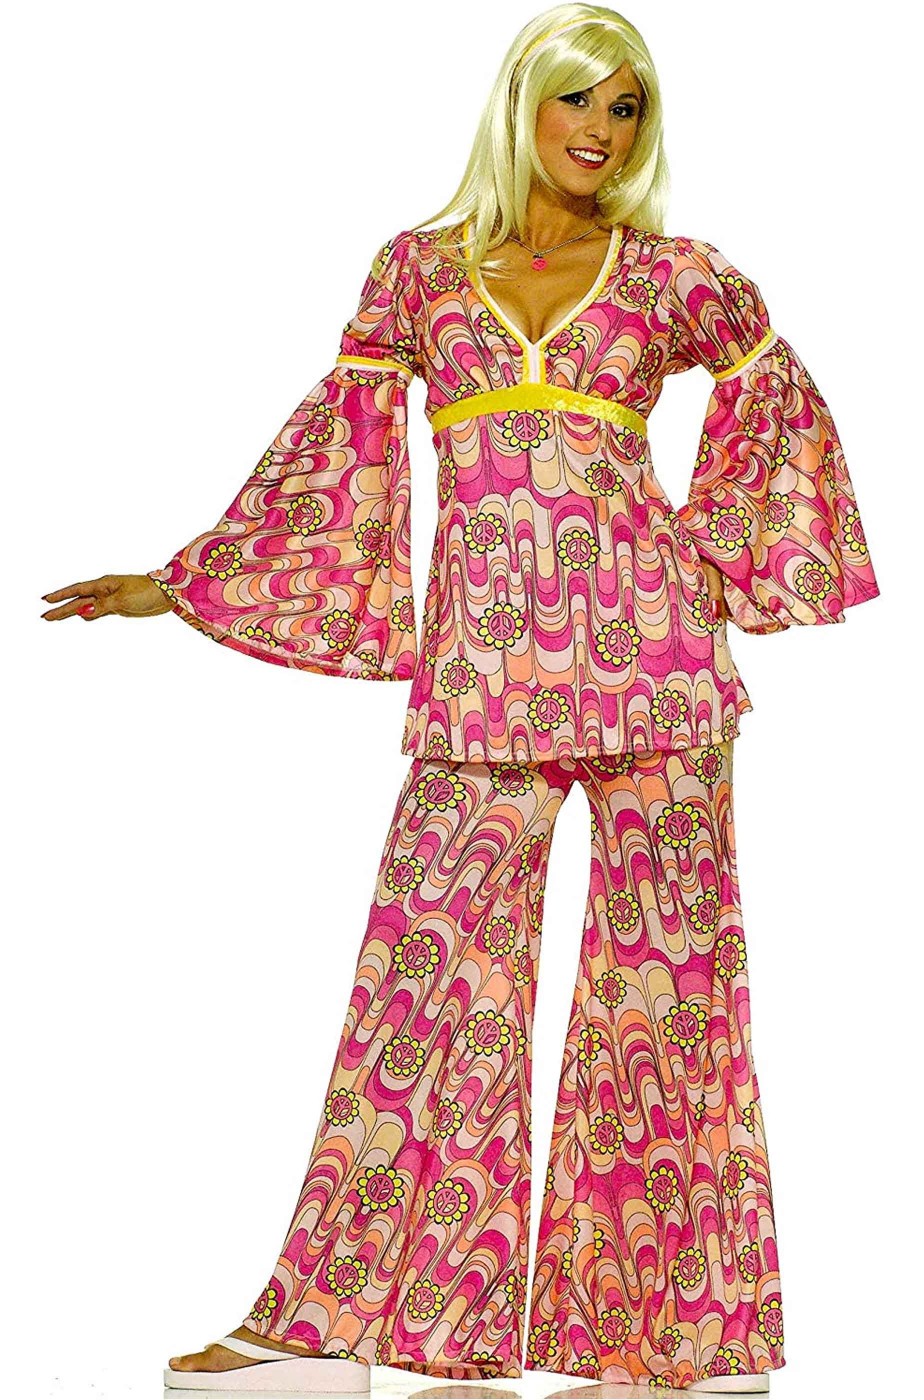 Vestito di carnevale donna anni 70 fantasia a fiori pantalone a zampa